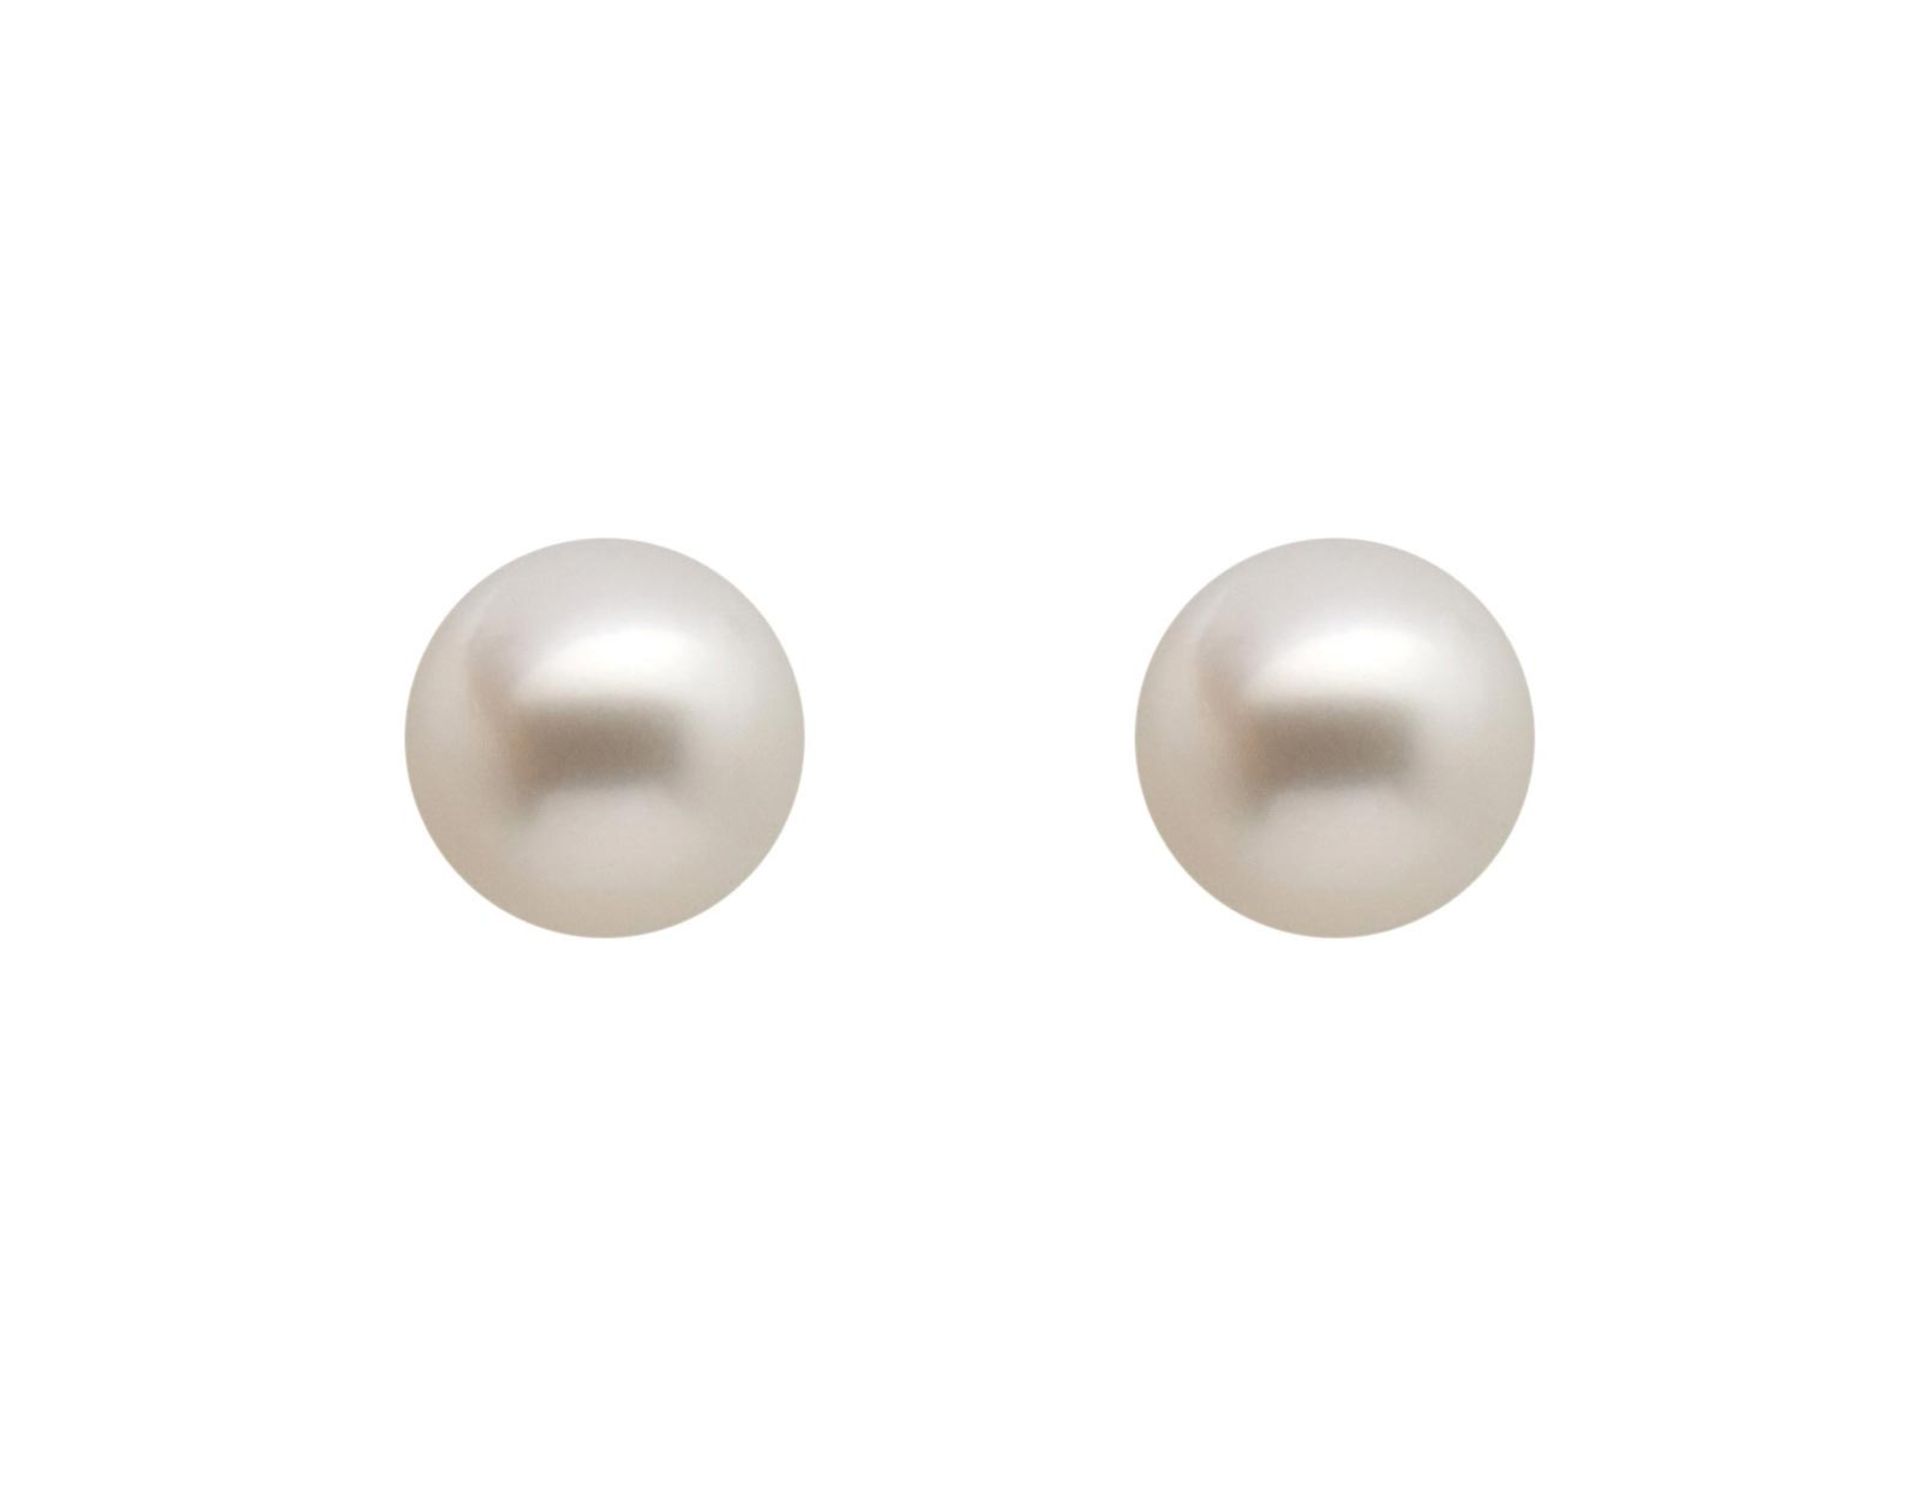 STUD EARRINGS Montura en oro de 18 kl. con perlas cultivadas esféricas de 10 mm. de diámetro. 3,6